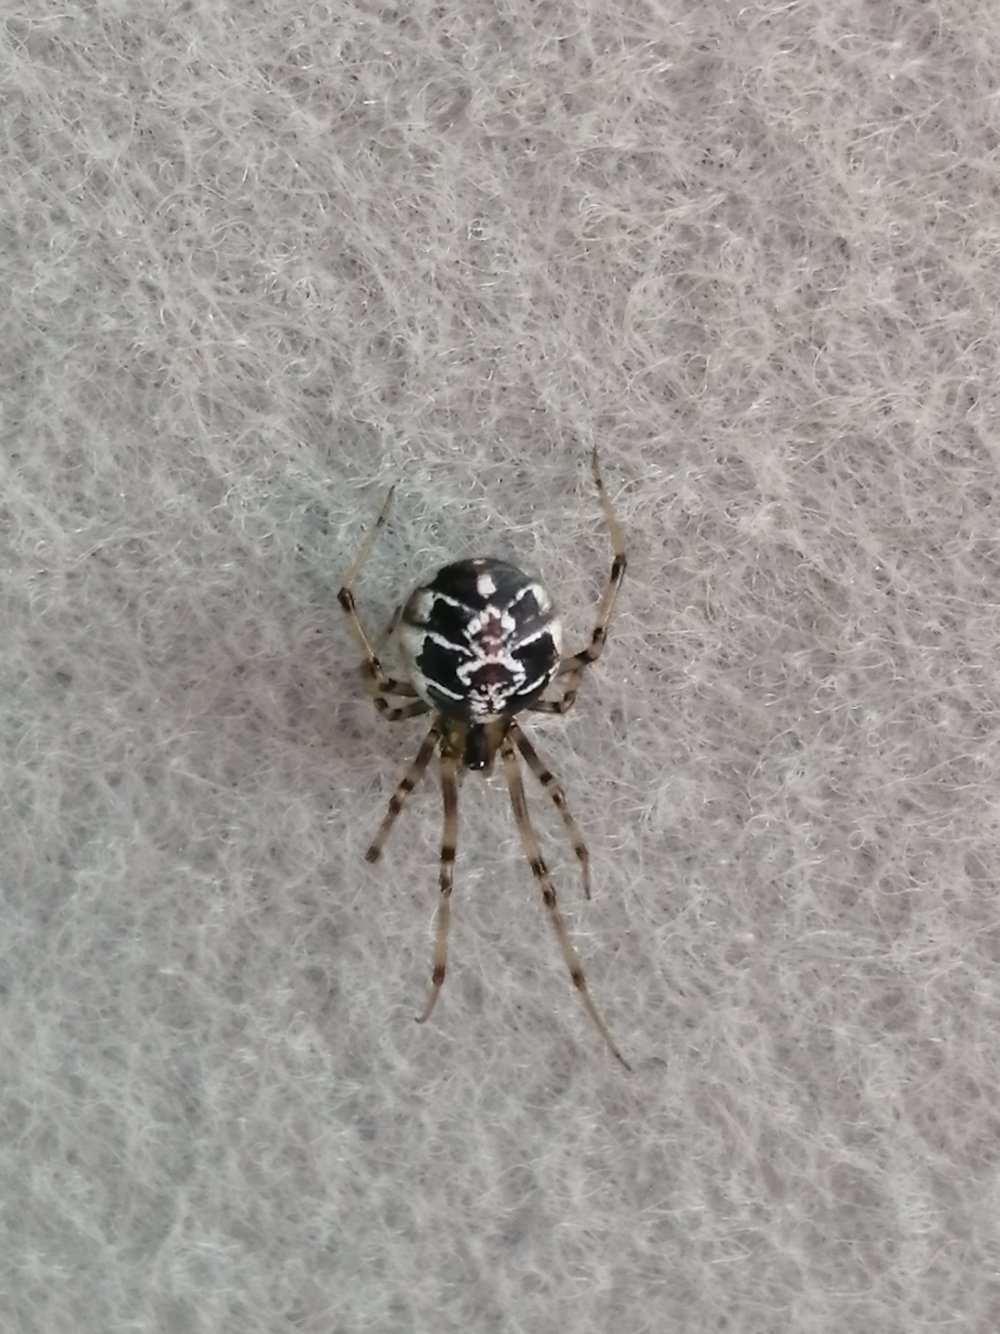 Чёрный паук с белыми пятнами на брюшке